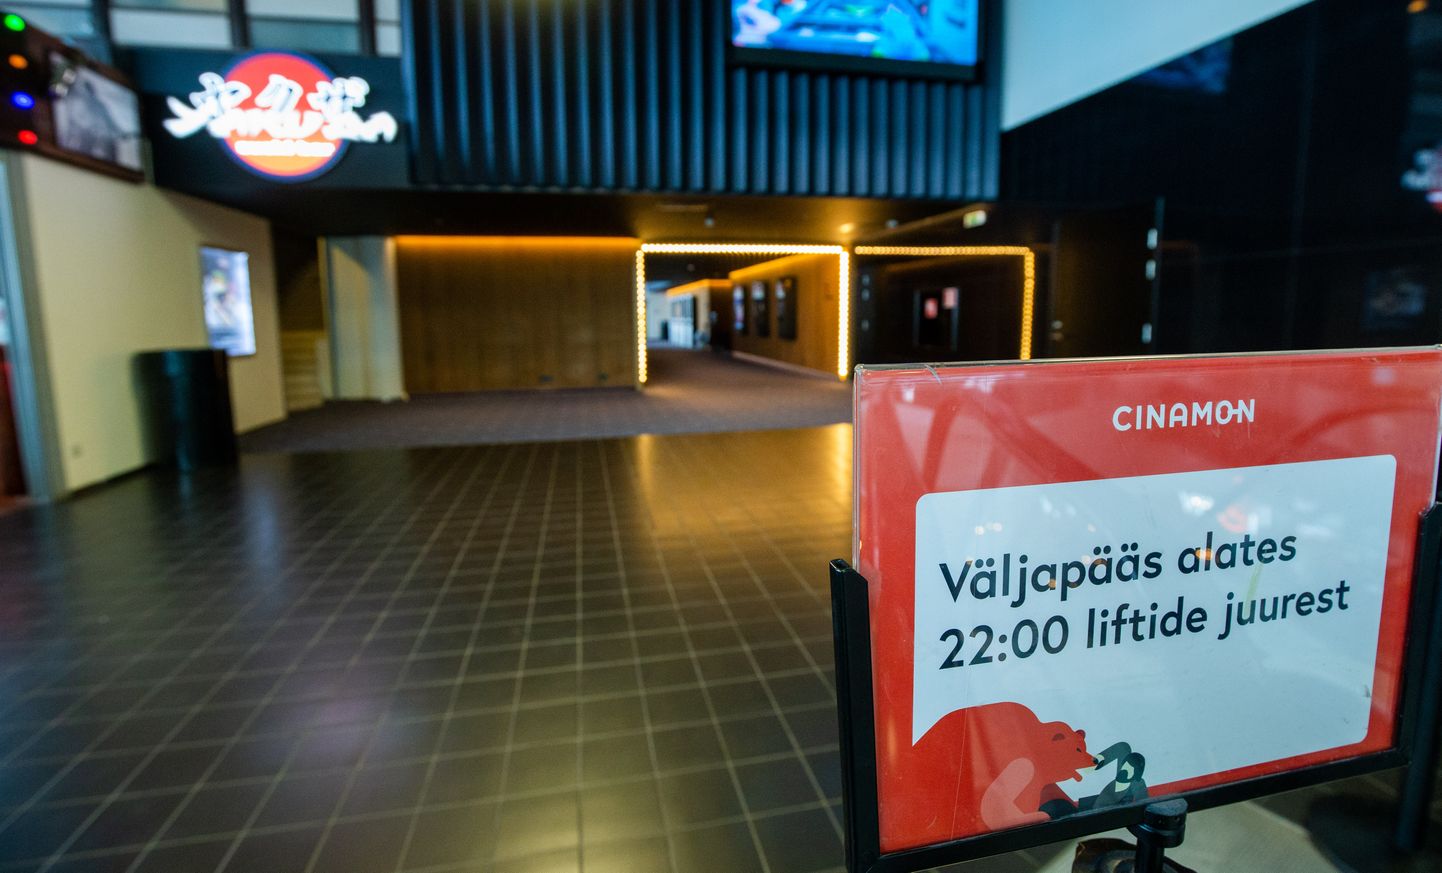 12 aastat Tartu Tasku keskuses tegutsenud Cinamoni kino lõpetas tegevuse augustis ning seal alates on ruumides valitsenud tühjus.